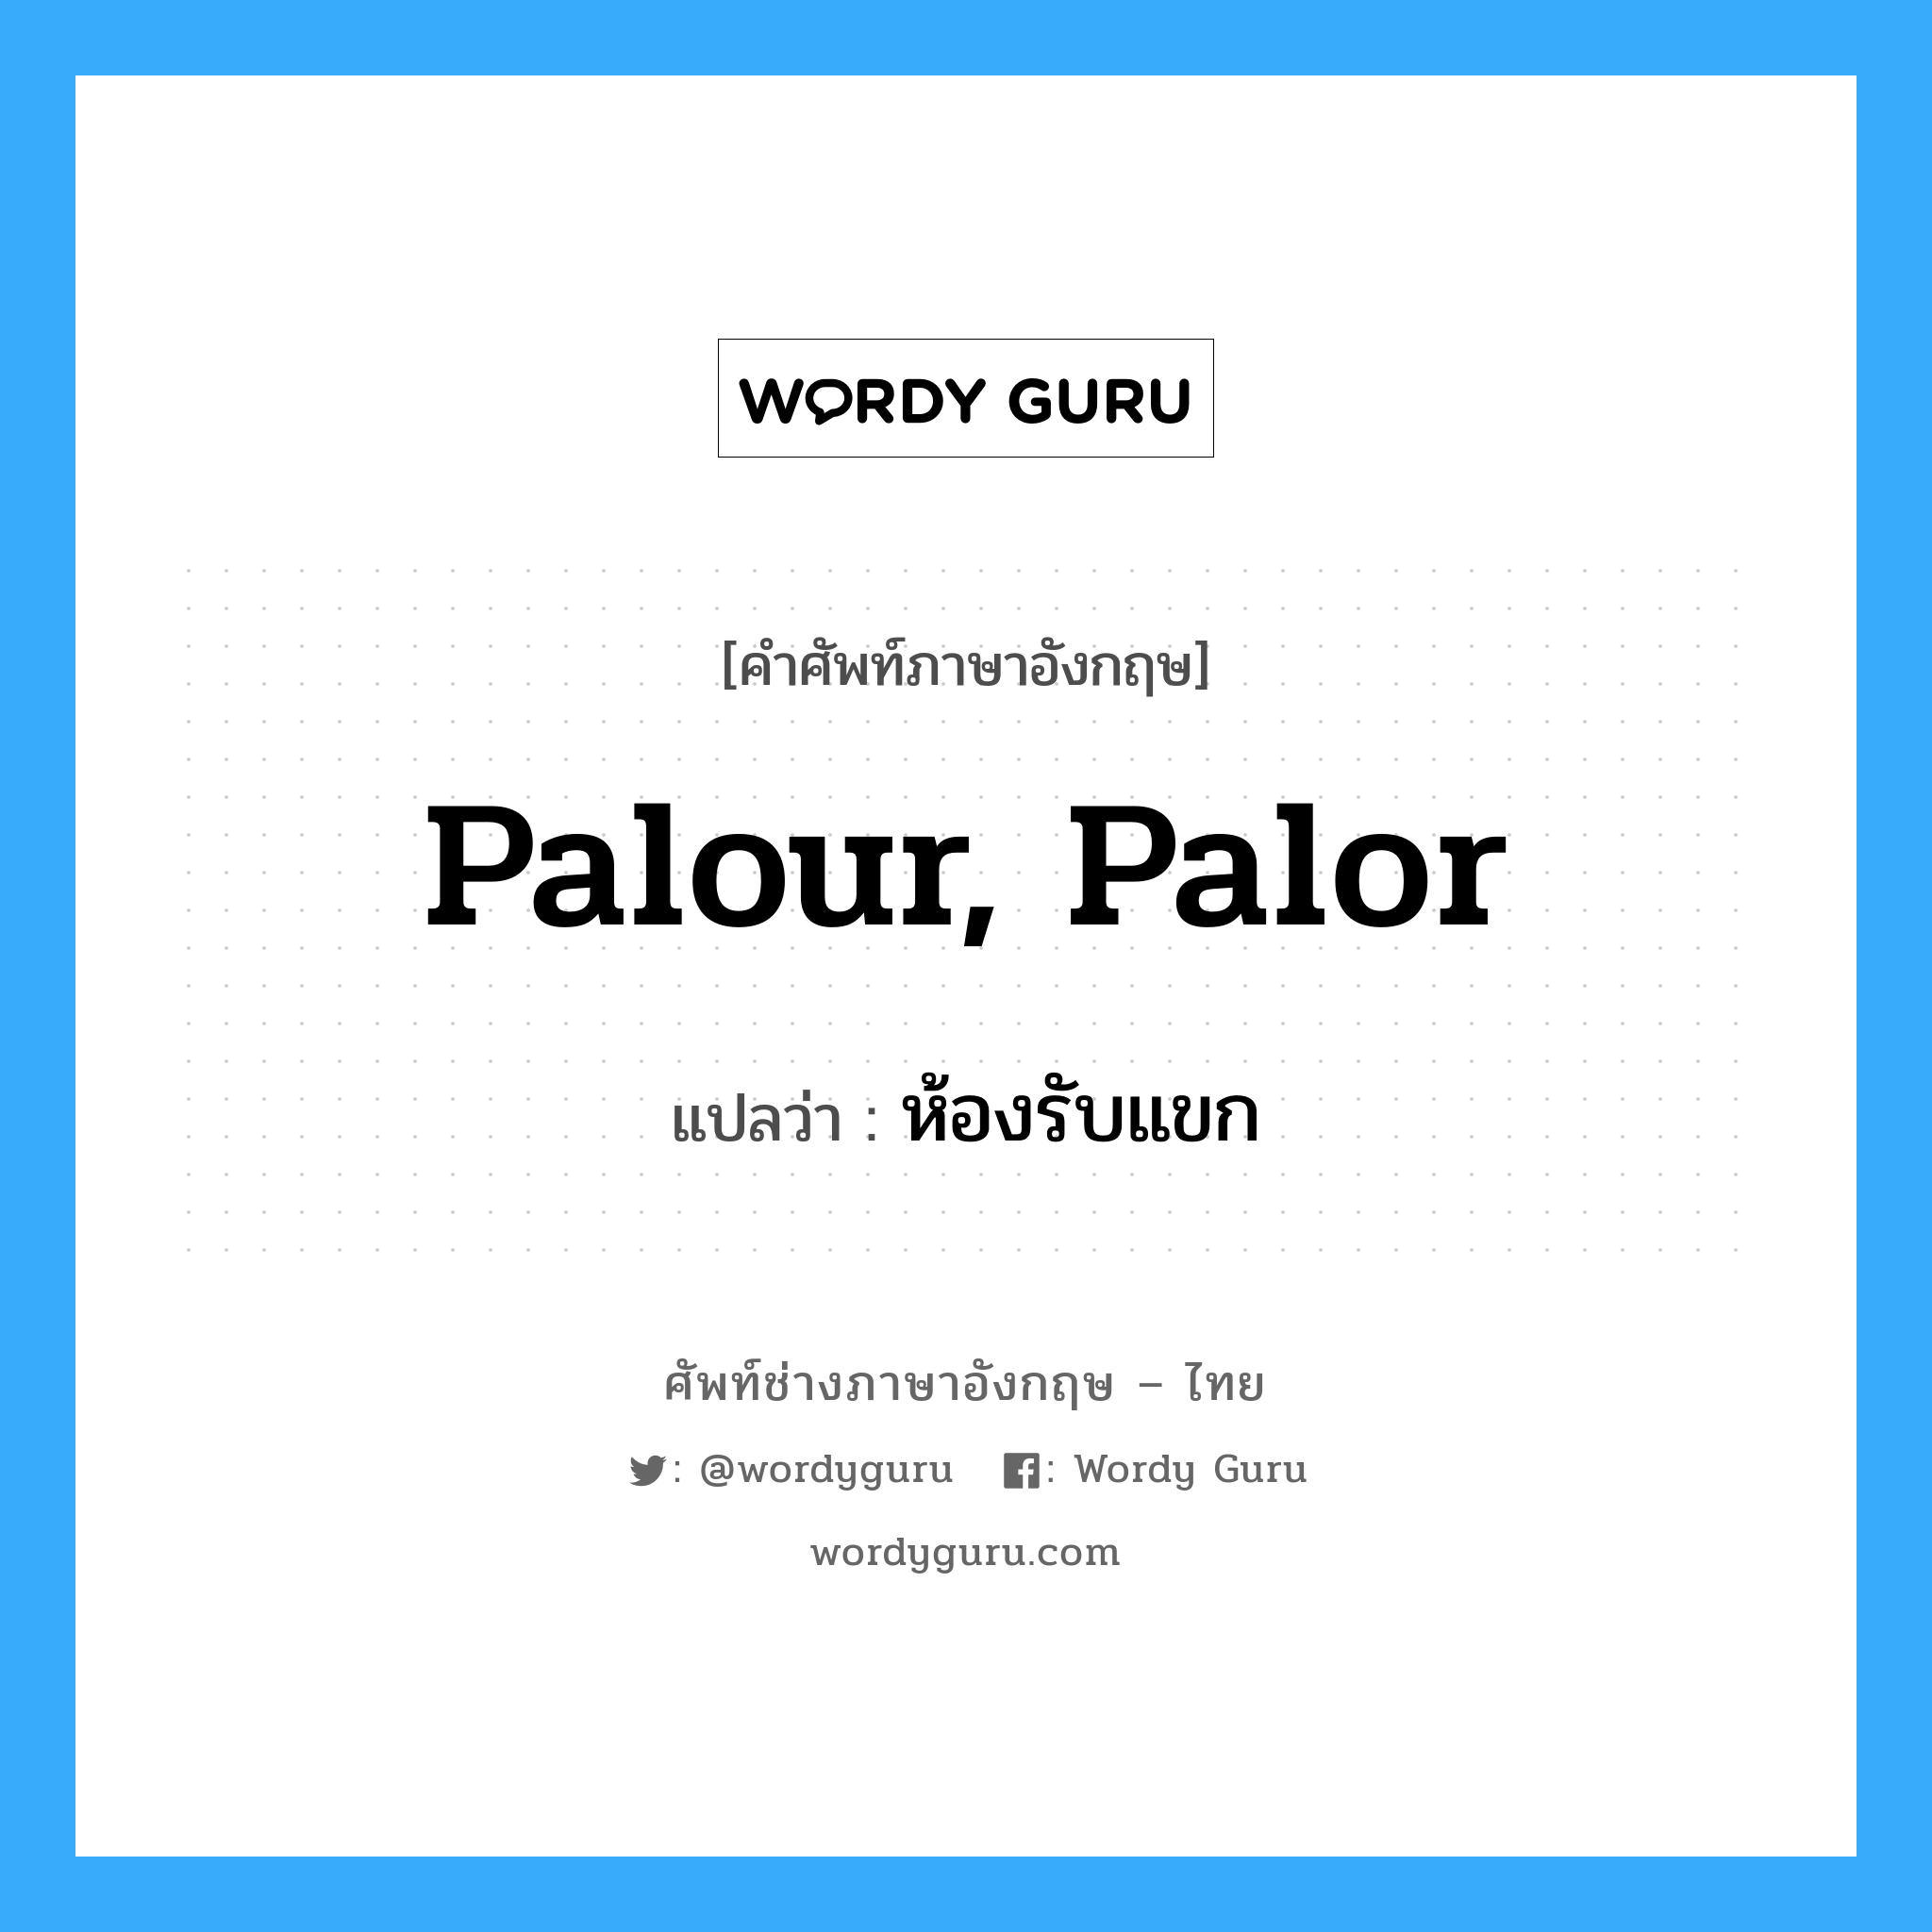 ห้องรับแขก ภาษาอังกฤษ?, คำศัพท์ช่างภาษาอังกฤษ - ไทย ห้องรับแขก คำศัพท์ภาษาอังกฤษ ห้องรับแขก แปลว่า palour, palor